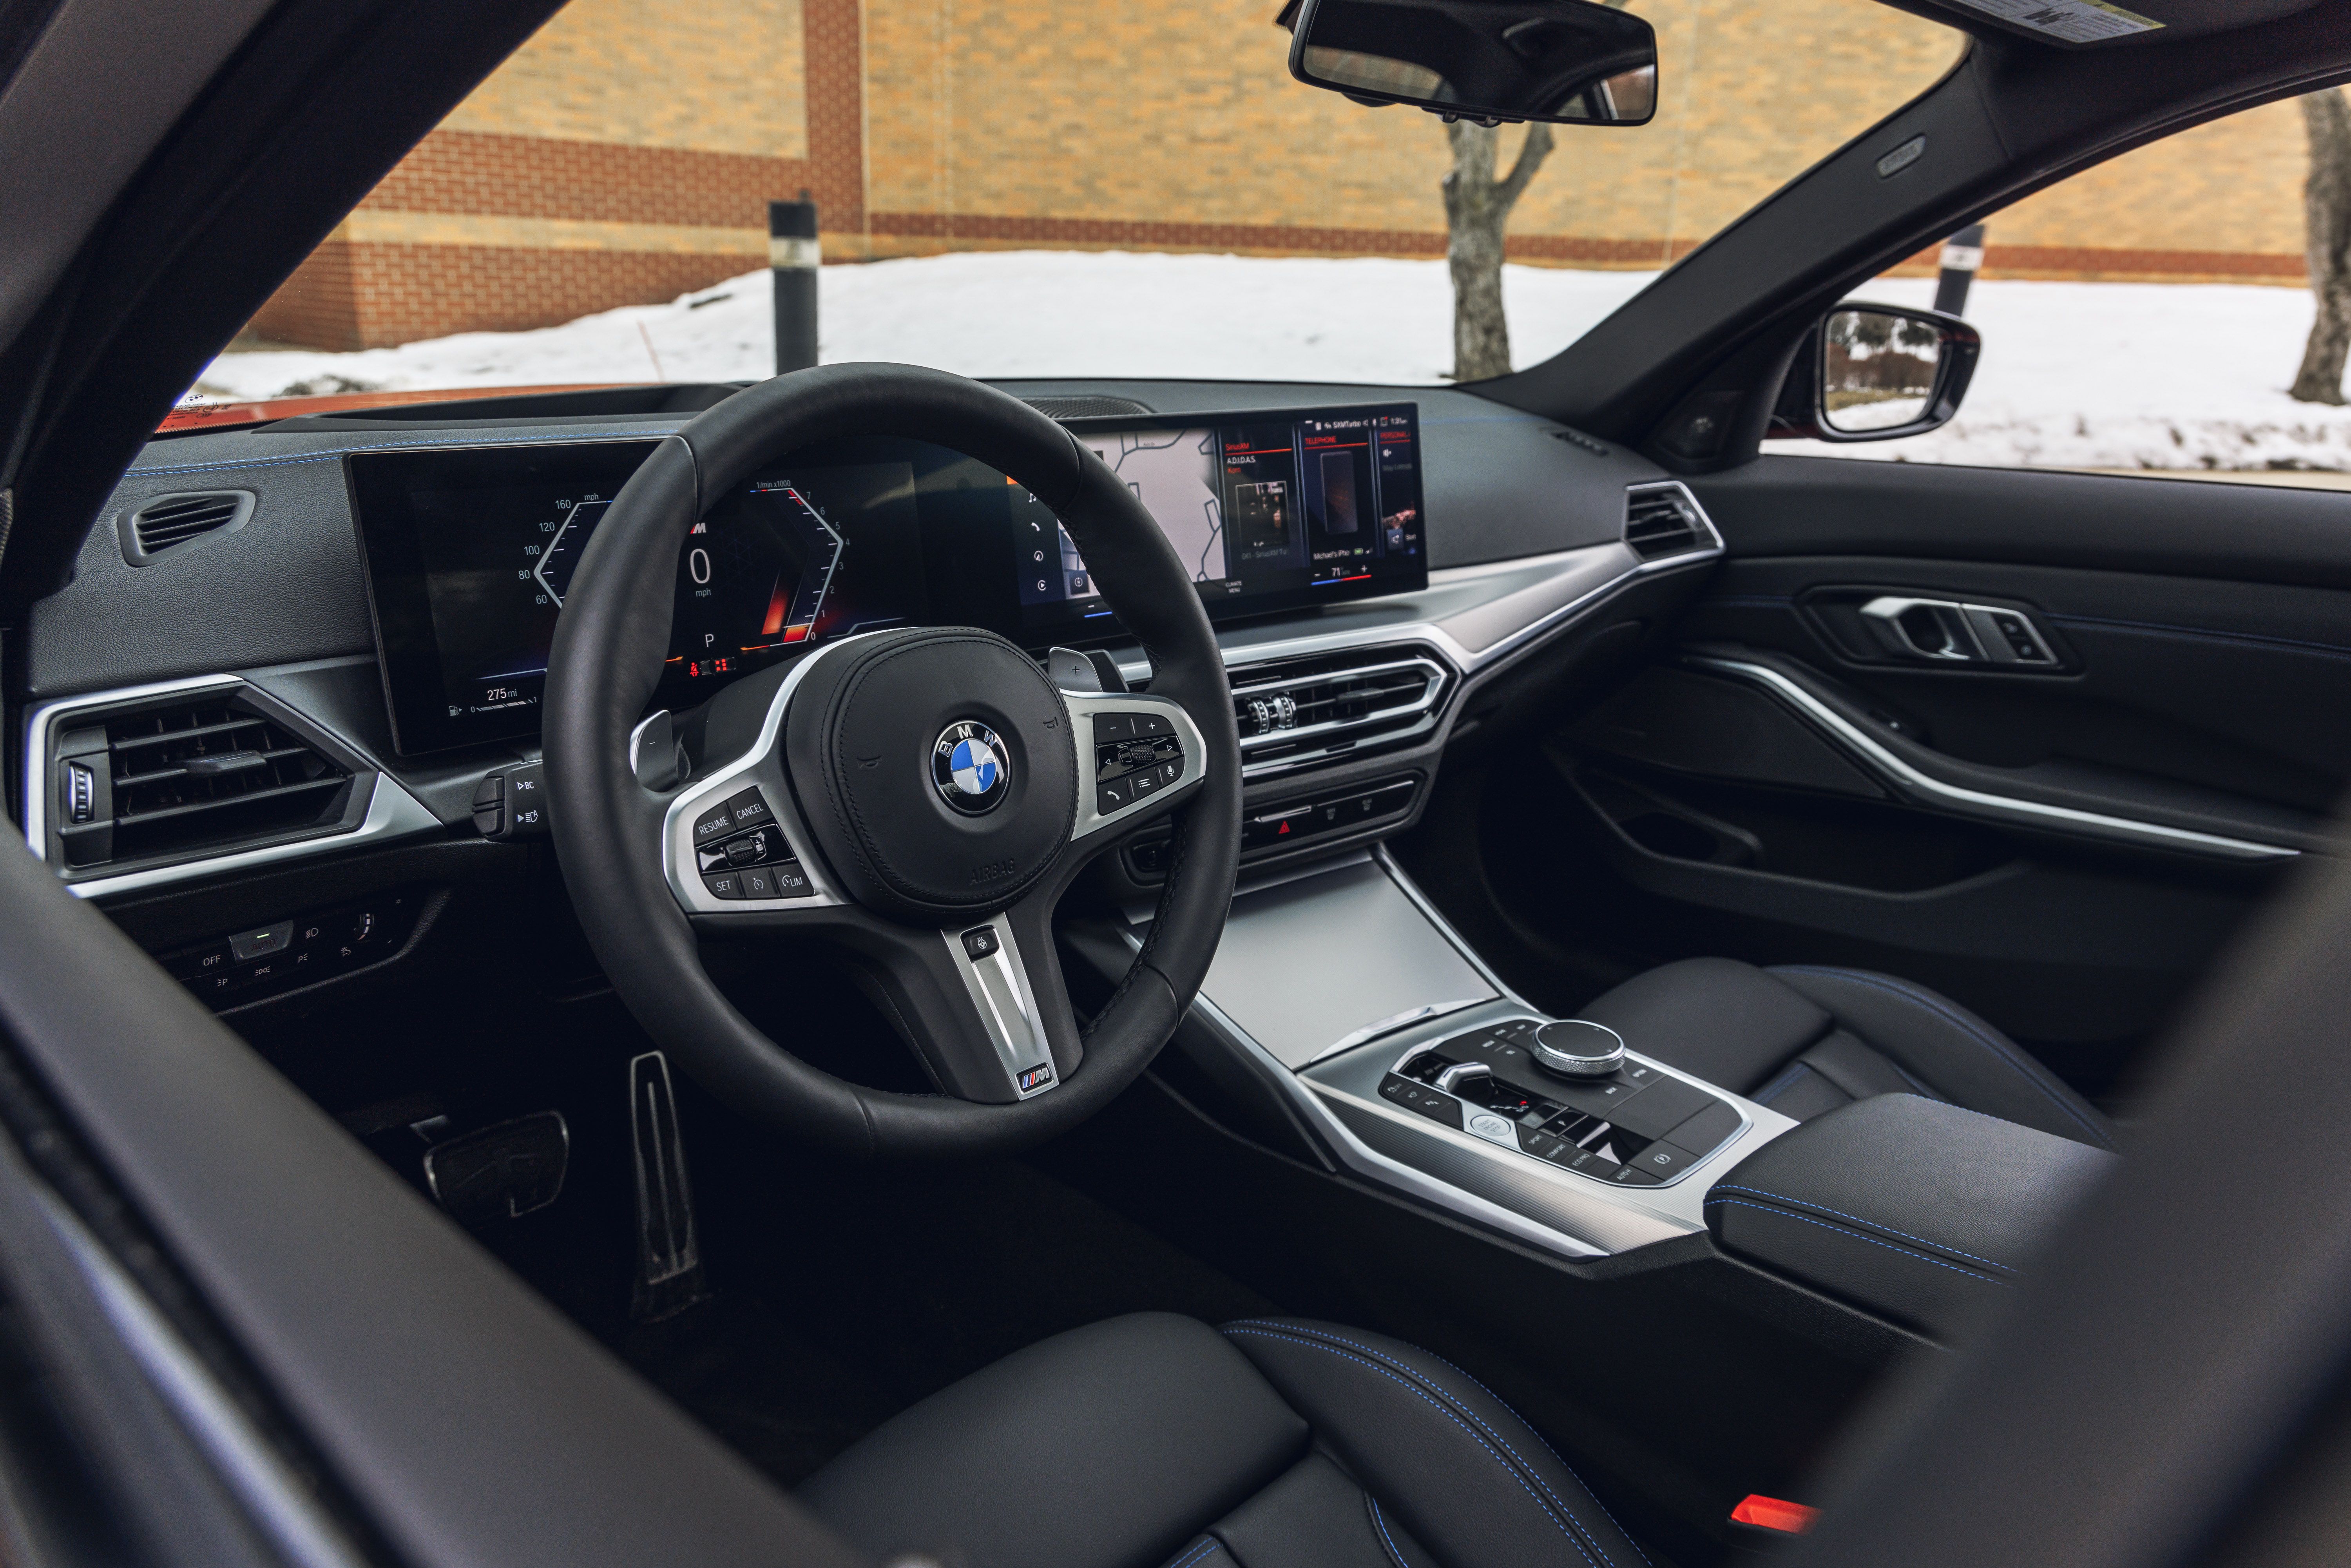 BMW 3 Series Touring - Mid-size Family Estate: Price, Interior